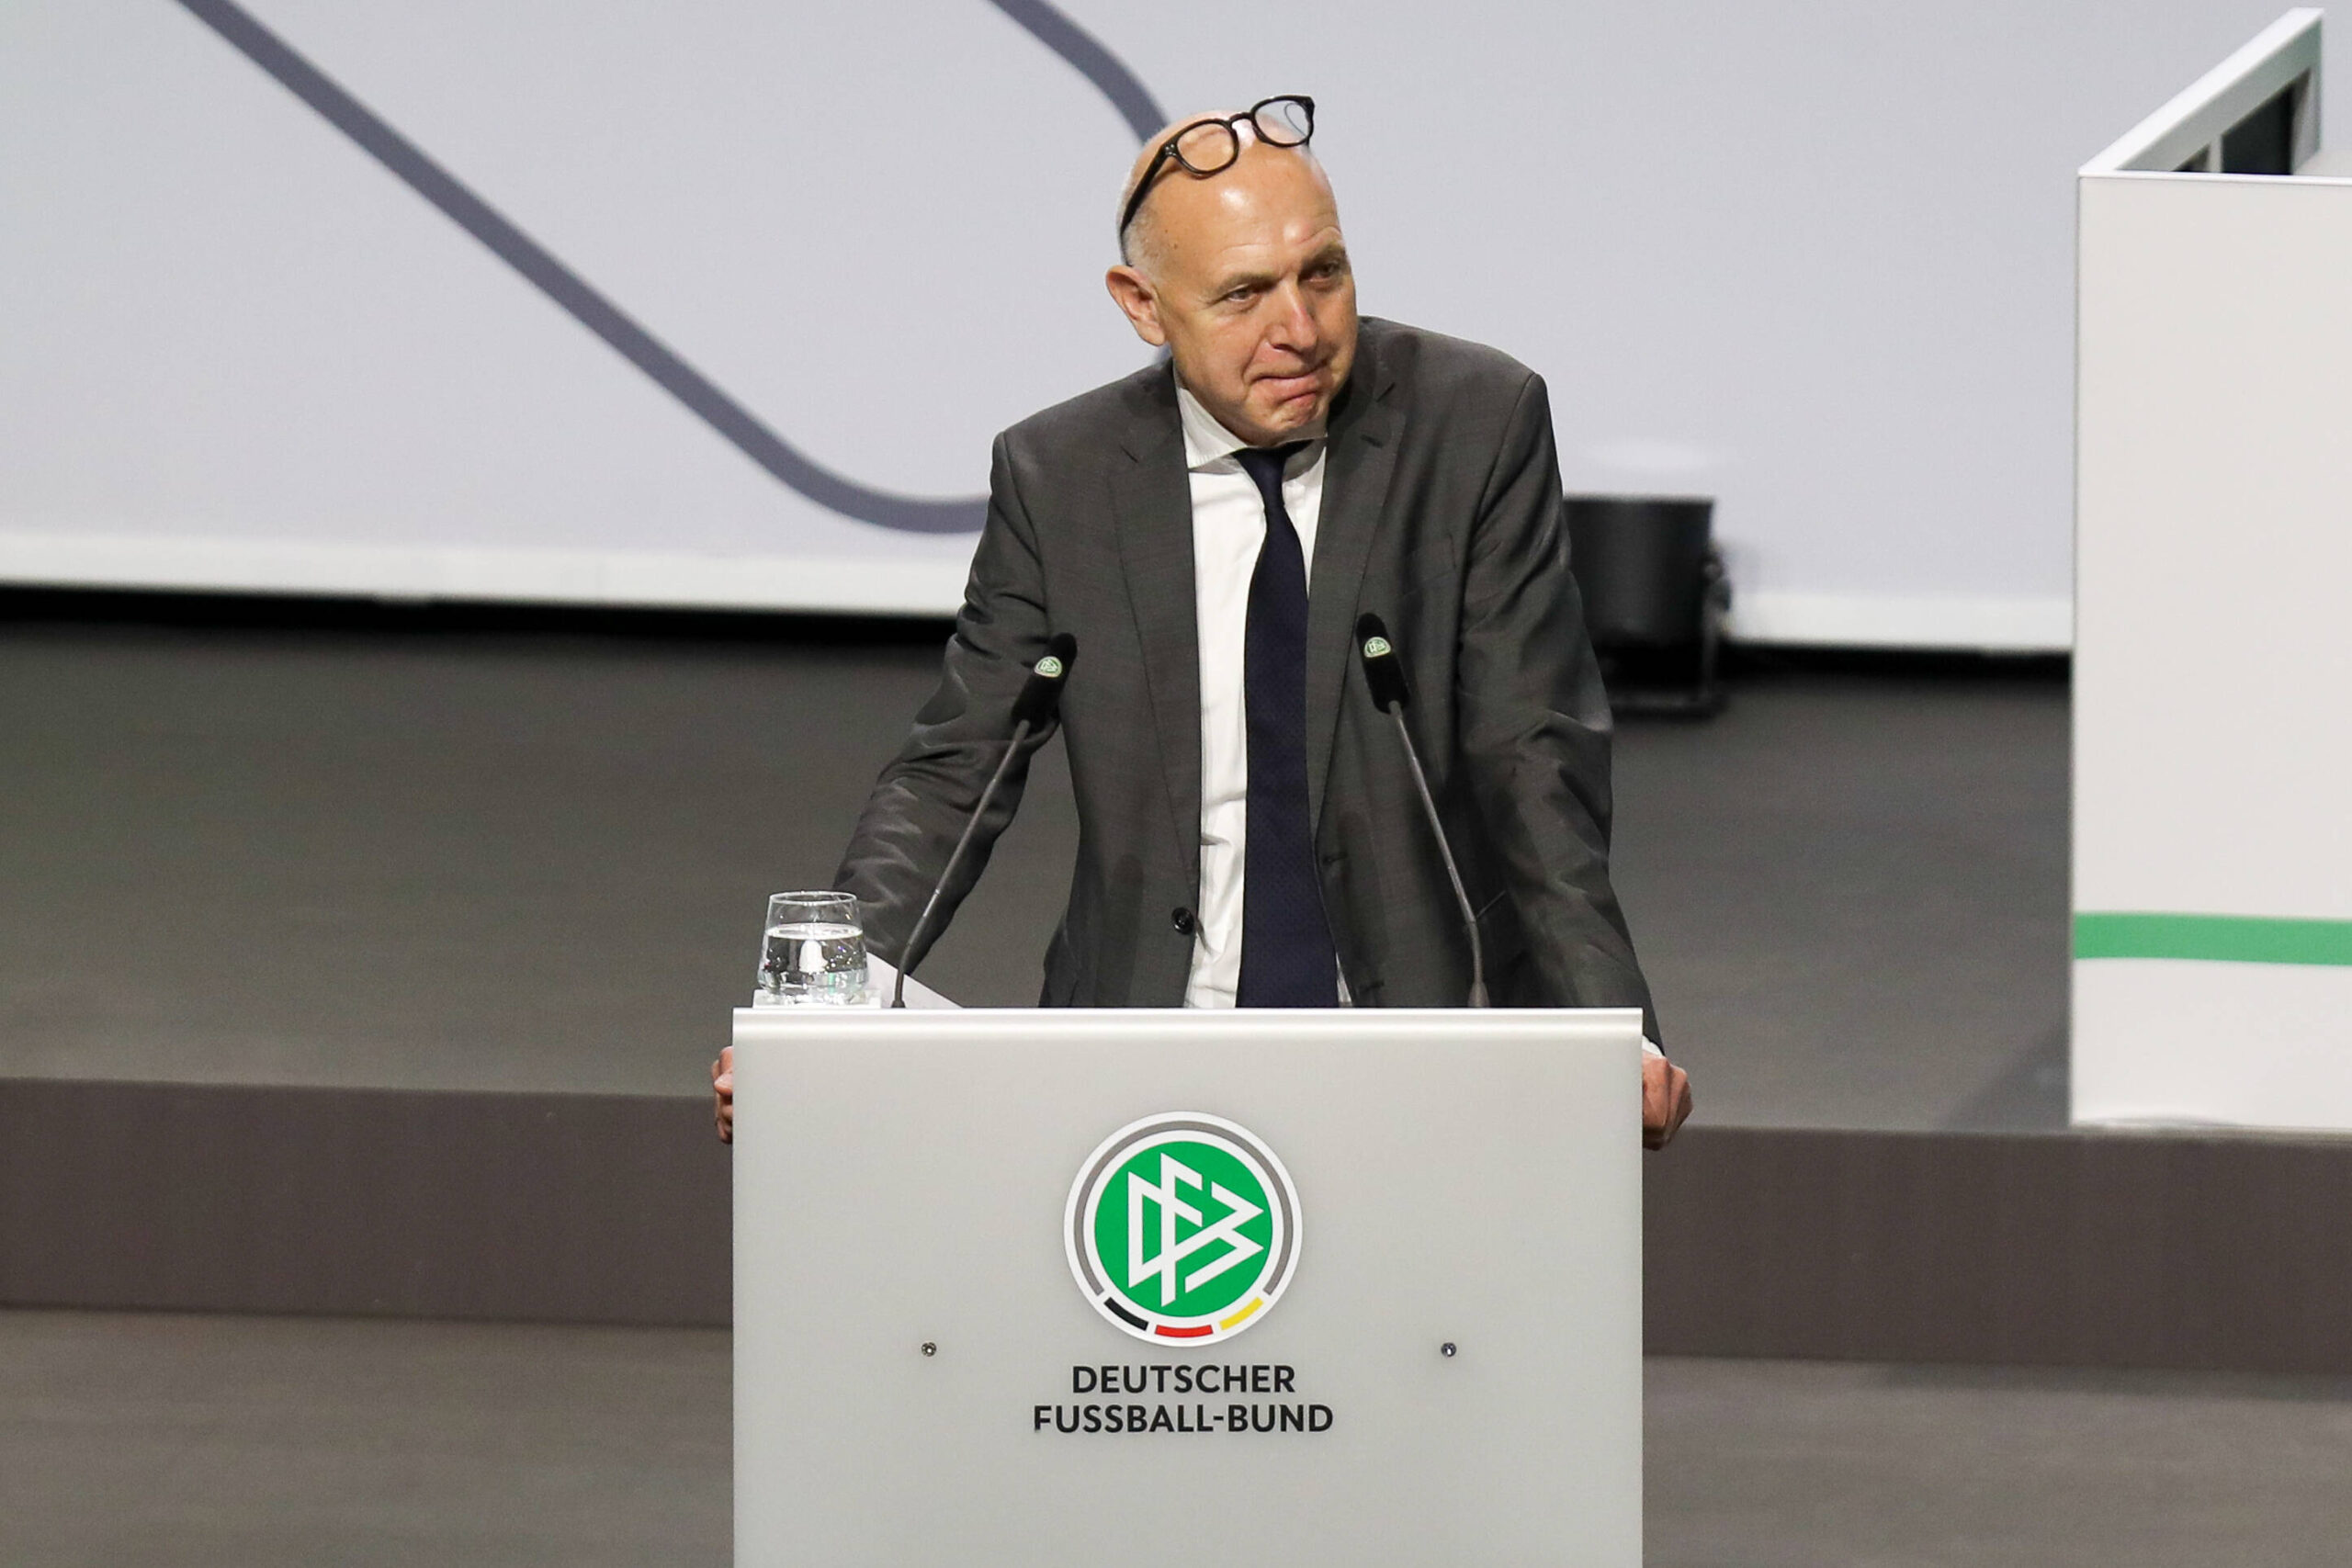 Der Neue an der DFB-Spitze: Bernd Neuendorf setzte sich deutlich bei der Präsidentenwahl durch.